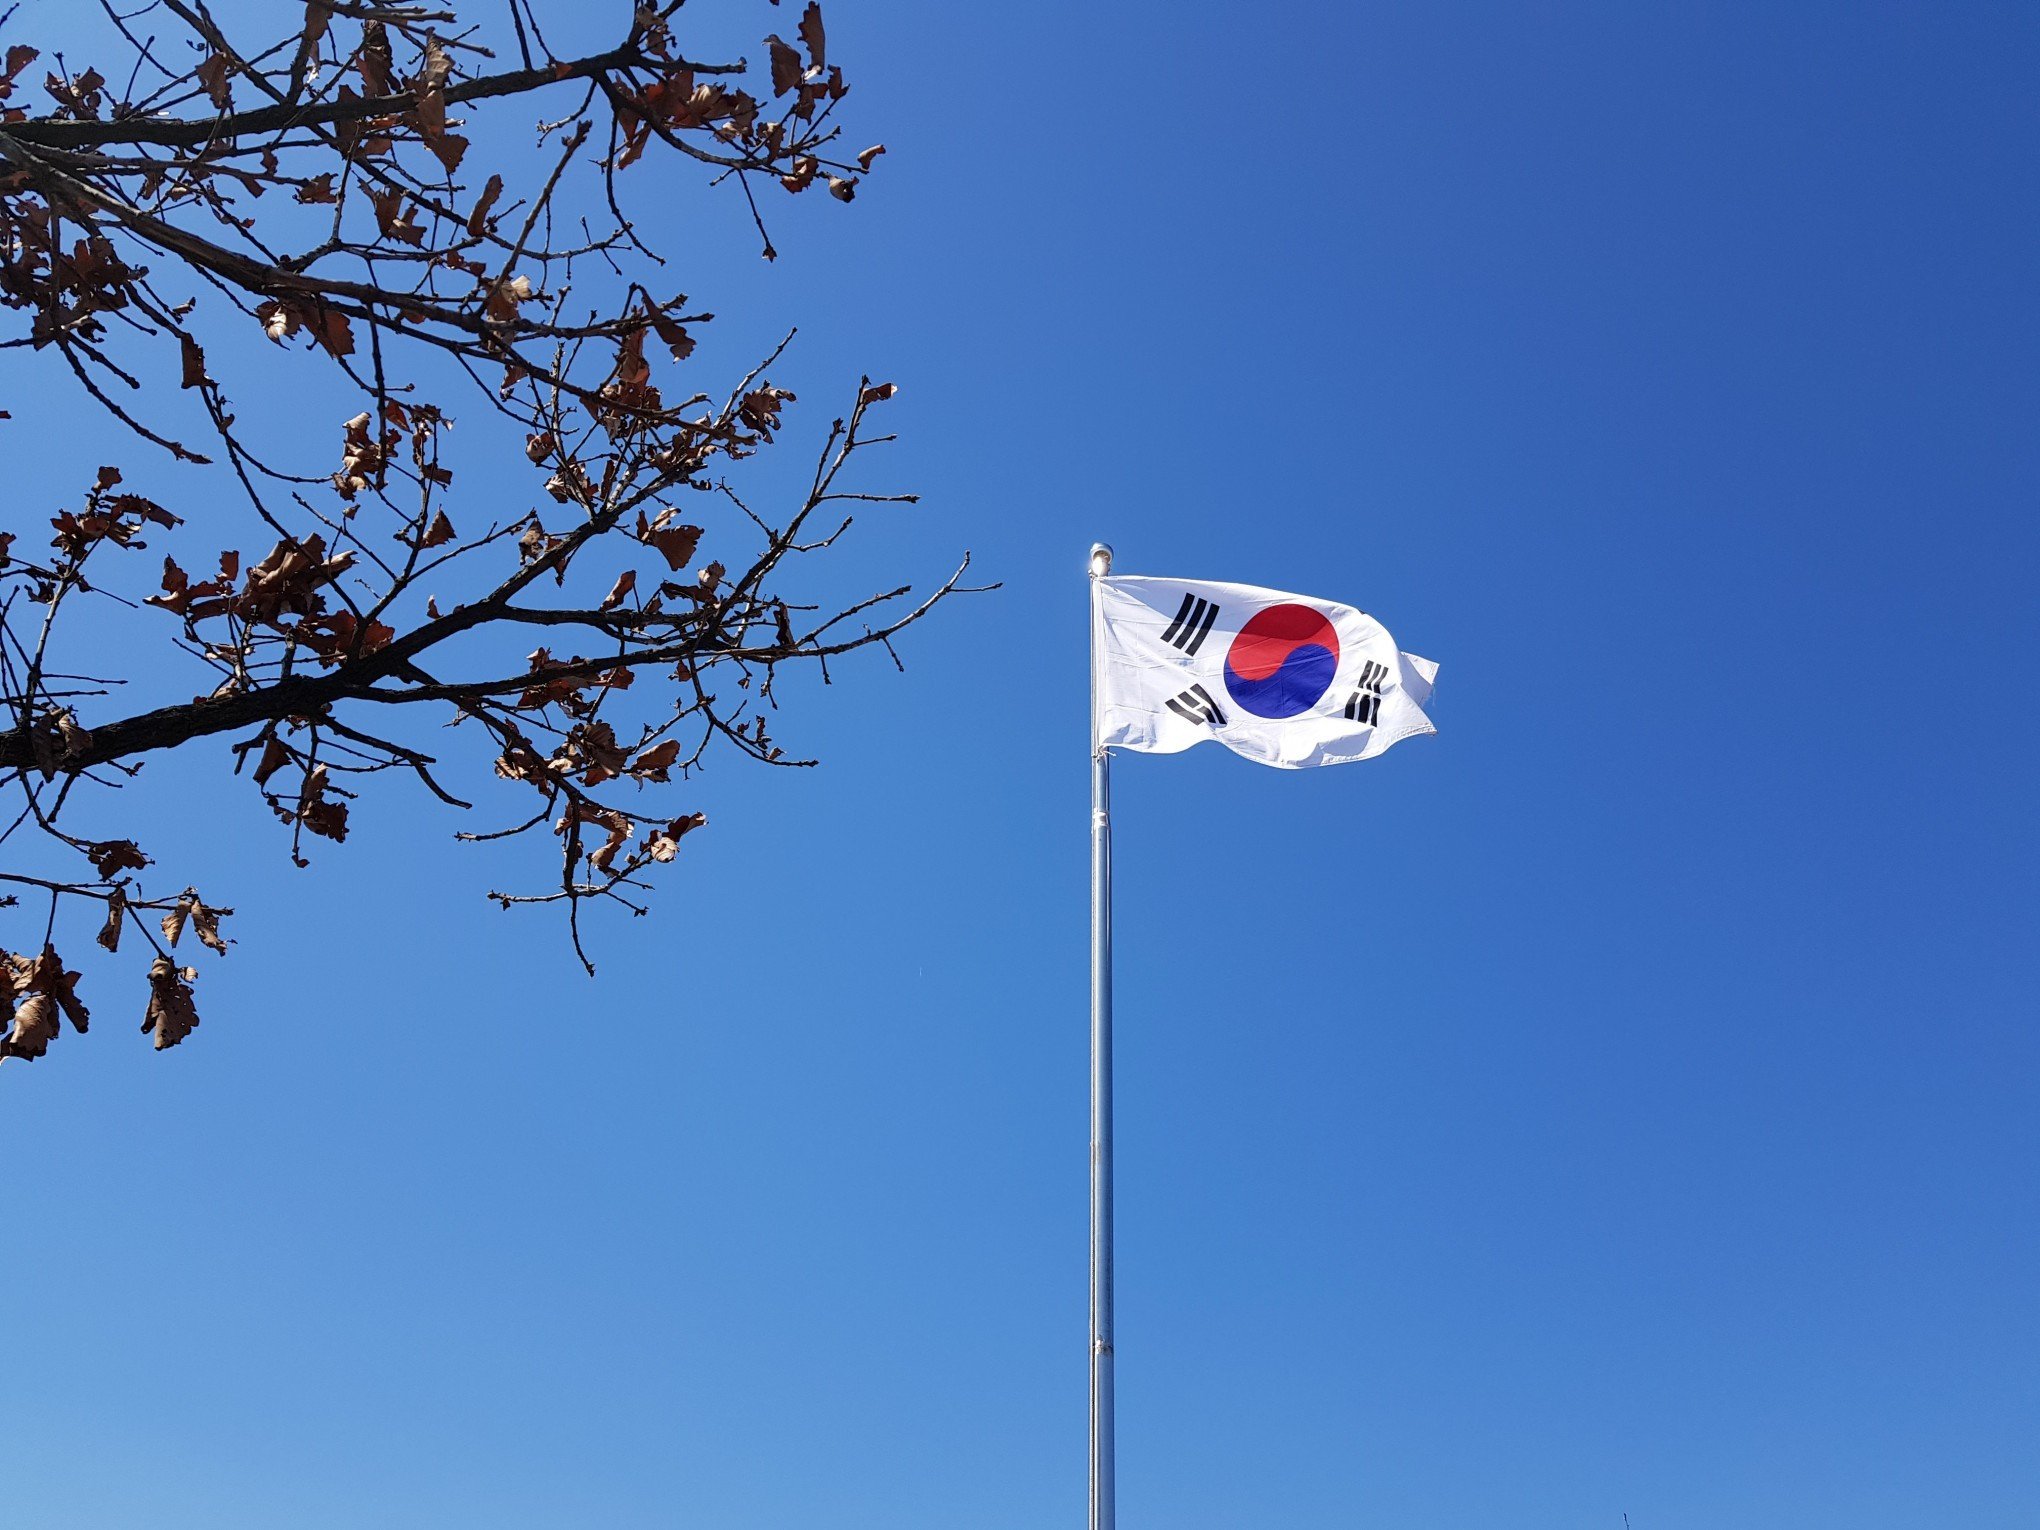 Jovem é morto por escutar K-pop, afirma relatório da Coreia do Sul